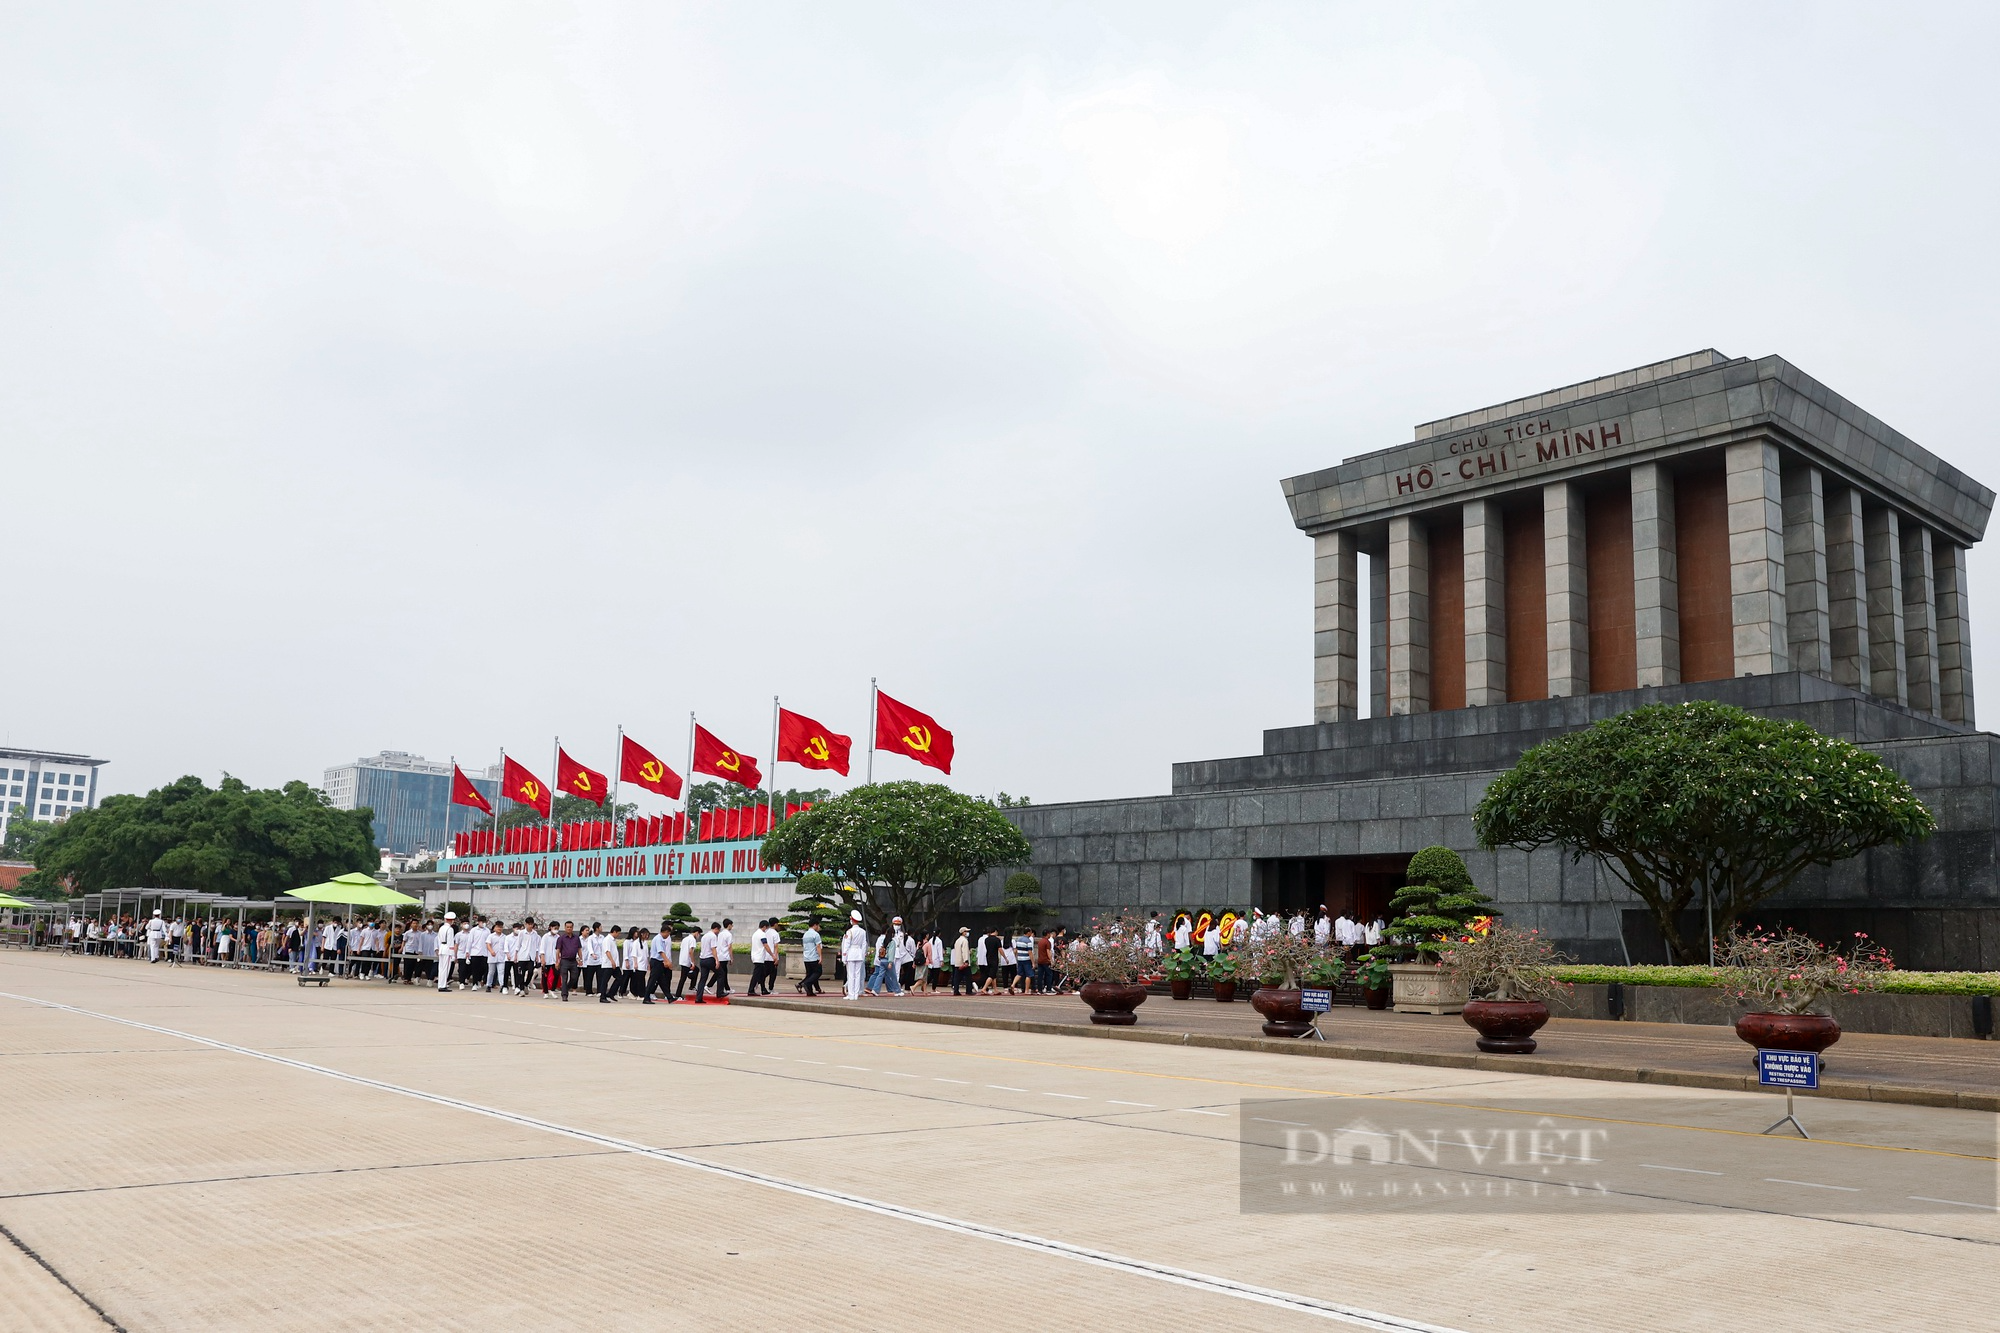 Hàng đoàn bạn bè quốc tế vào Lăng viếng Chủ tịch Hồ Chí Minh trong ngày sinh nhật Người  - Ảnh 1.